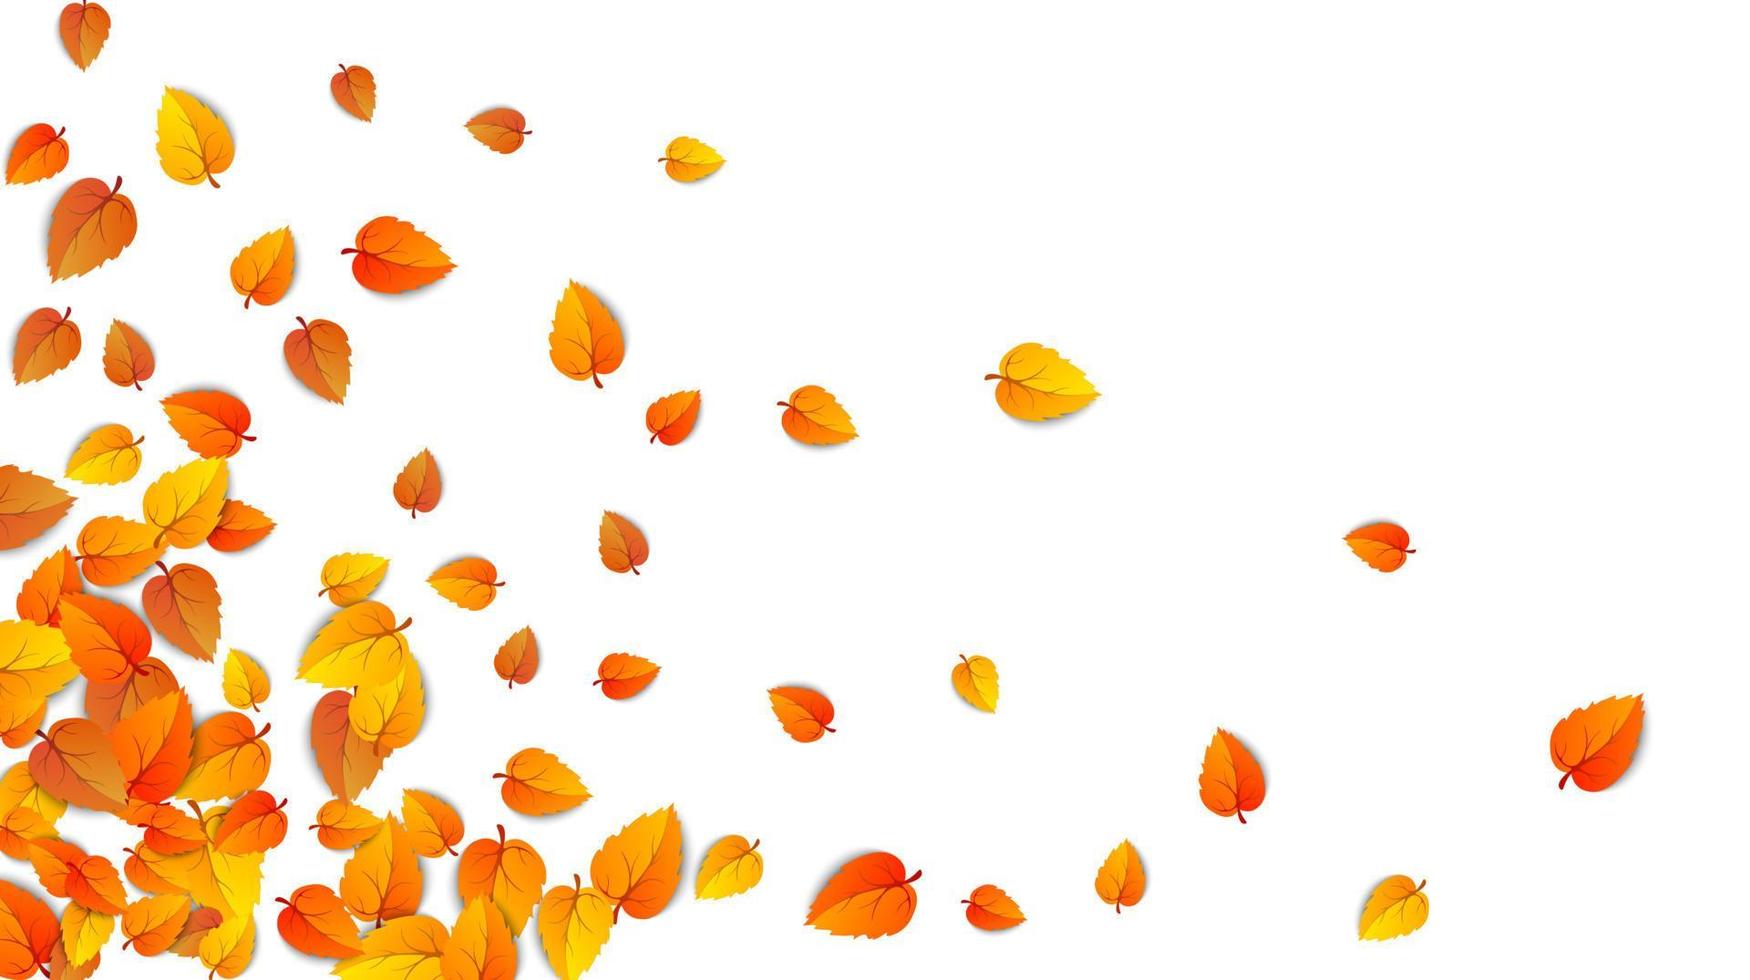 banner horizontal de hojas de otoño transparente aislado sobre fondo blanco. plantilla publicitaria con hoja dorada de otoño. patrón de colores de la temporada de otoño. marco de papel tapiz de follaje de naturaleza otoñal. vector